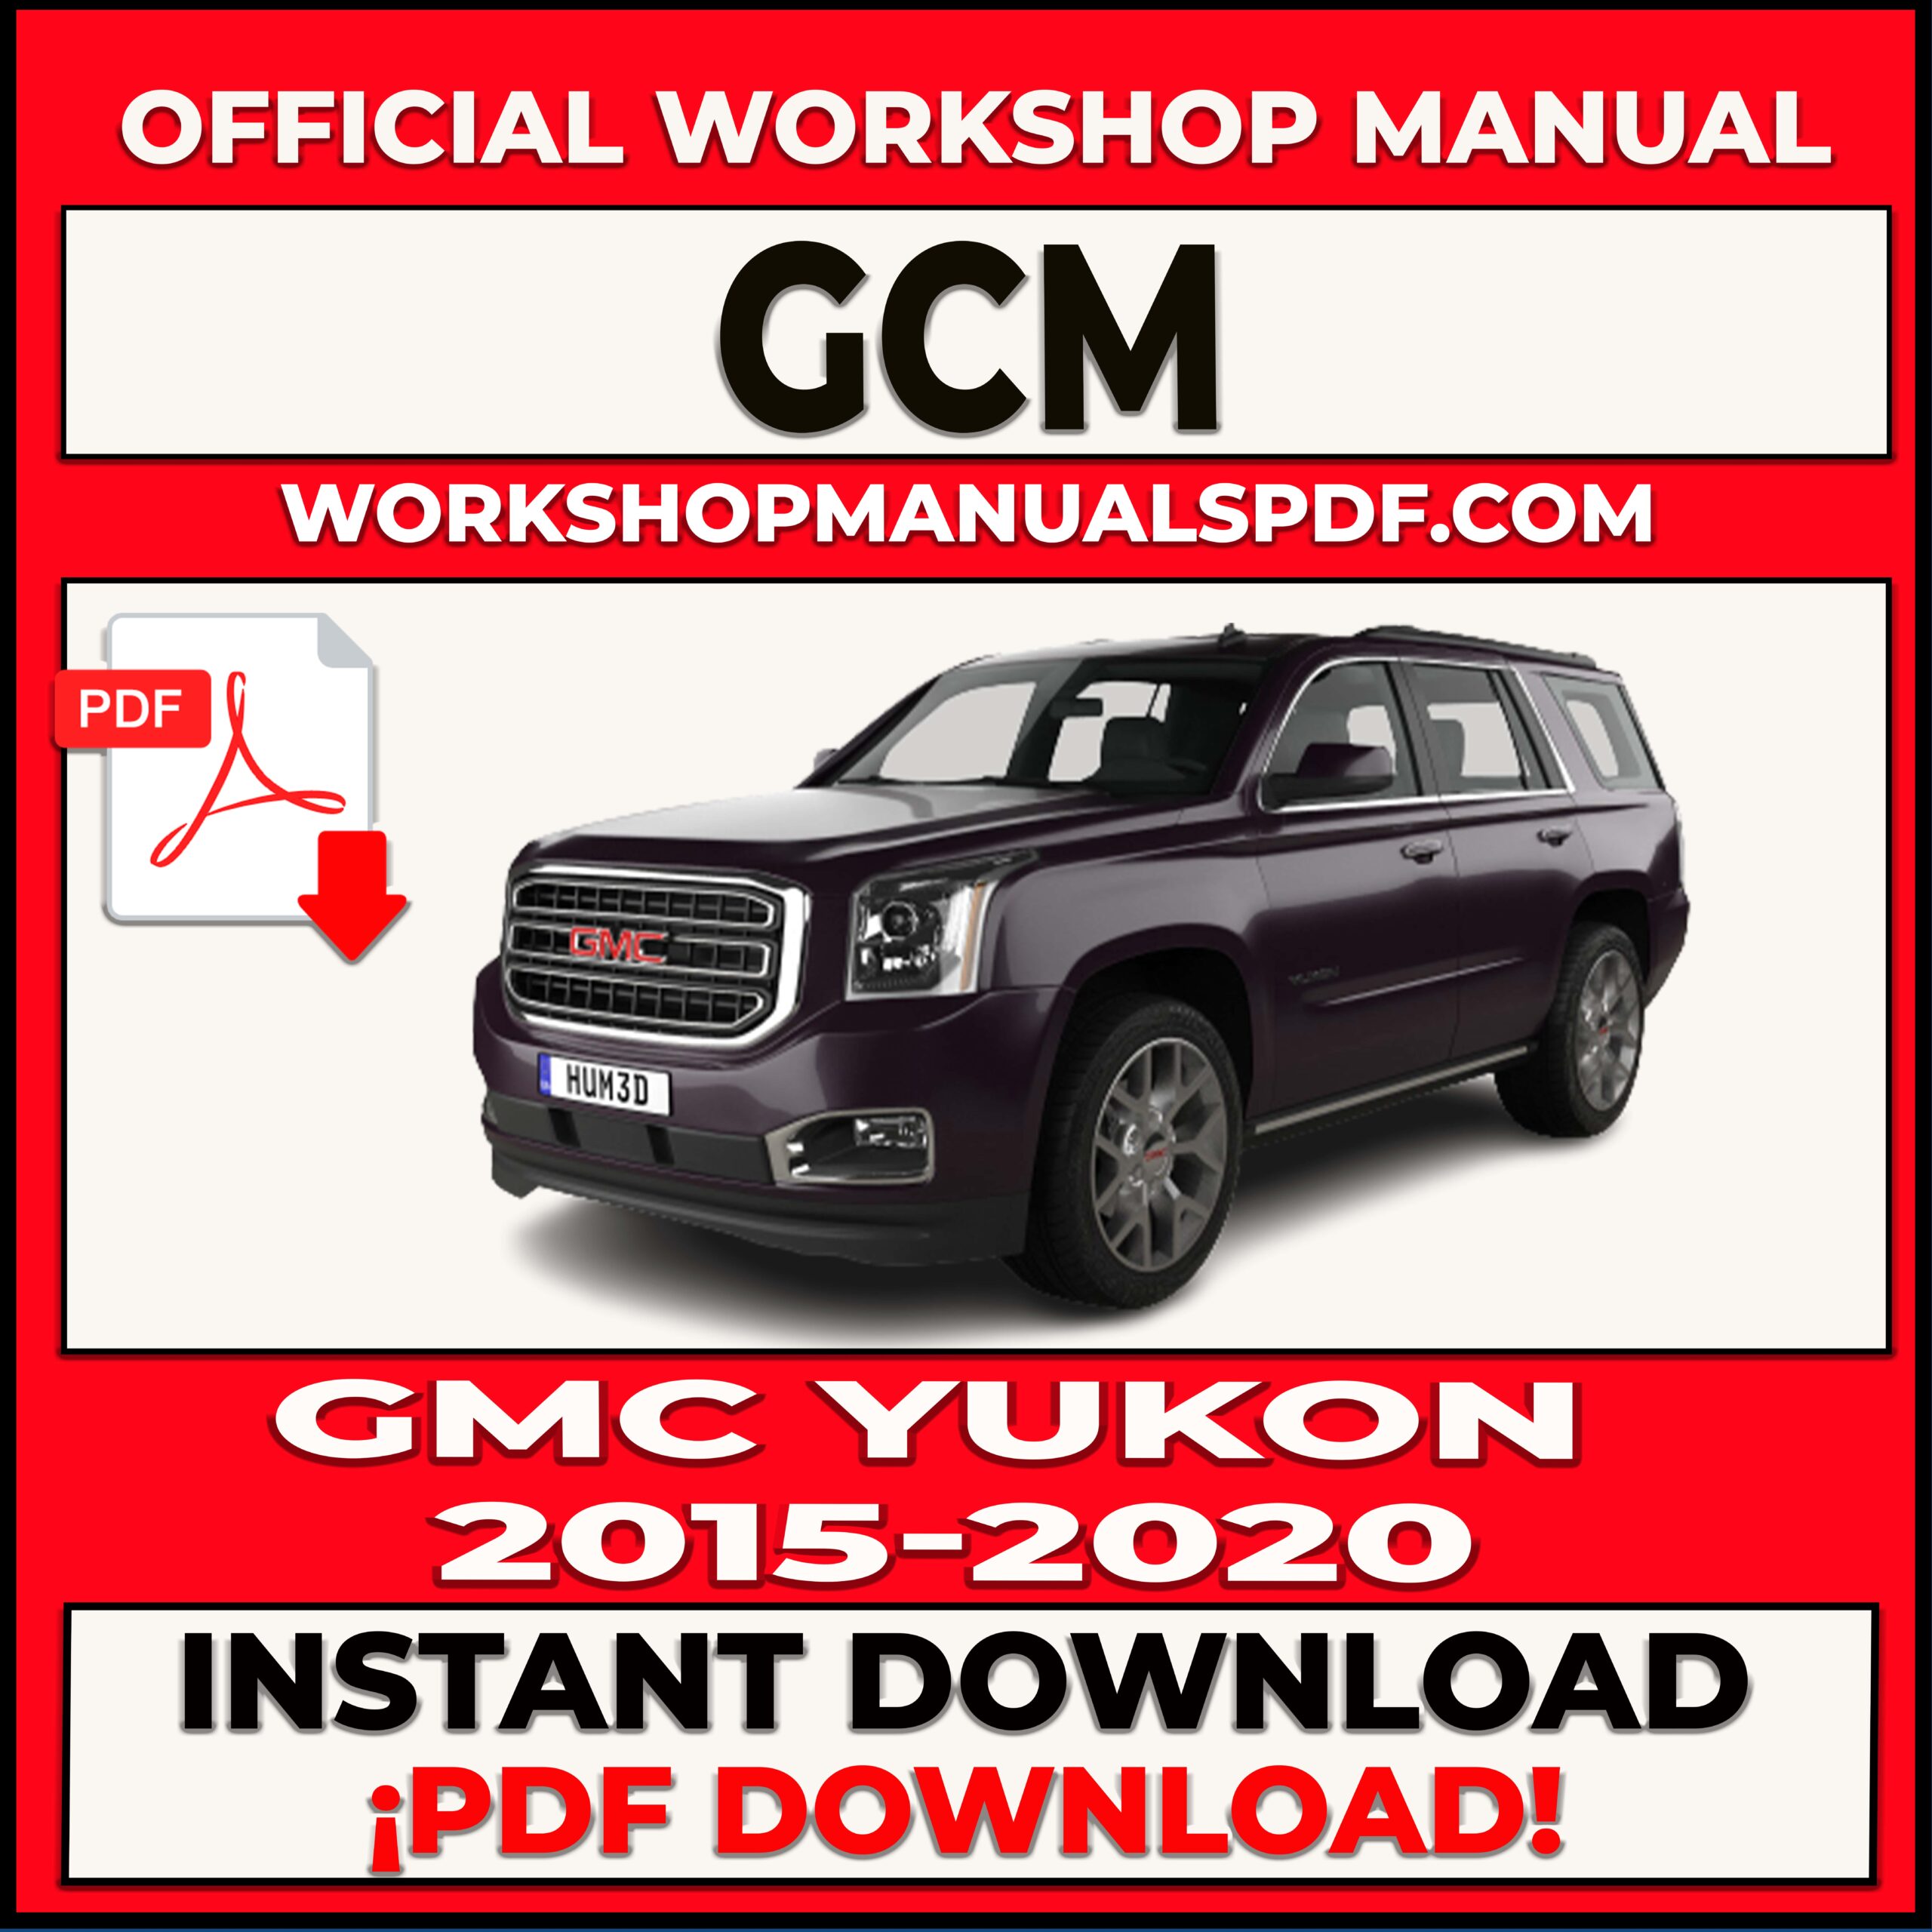 GMC Yukon 2015-2020 Workshop Repair Manual